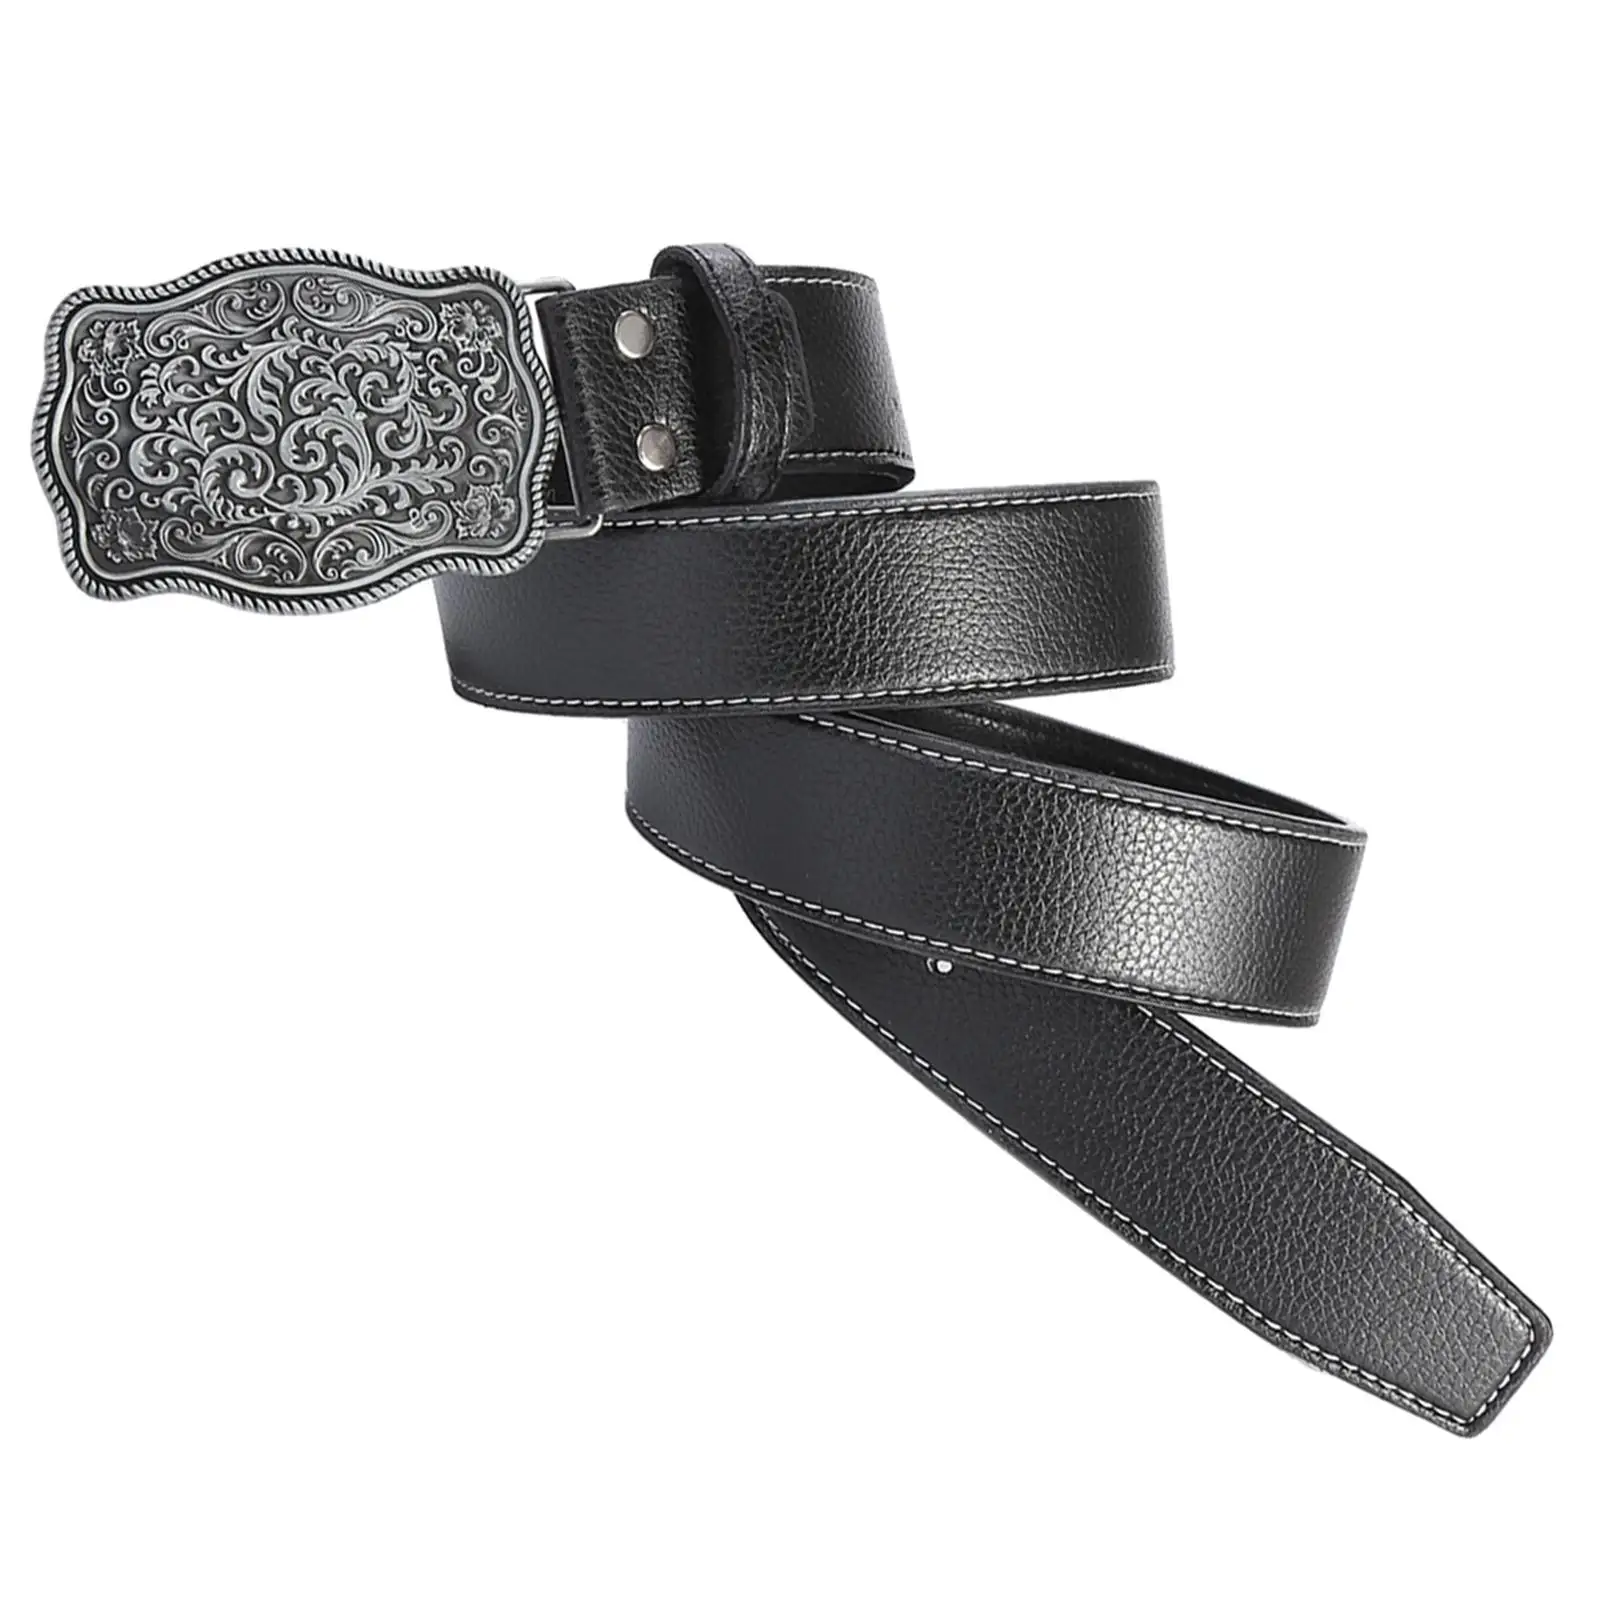 Western Belt Floral Buckle Versatile Adjustable Decorative Belt Fashion Strap 47